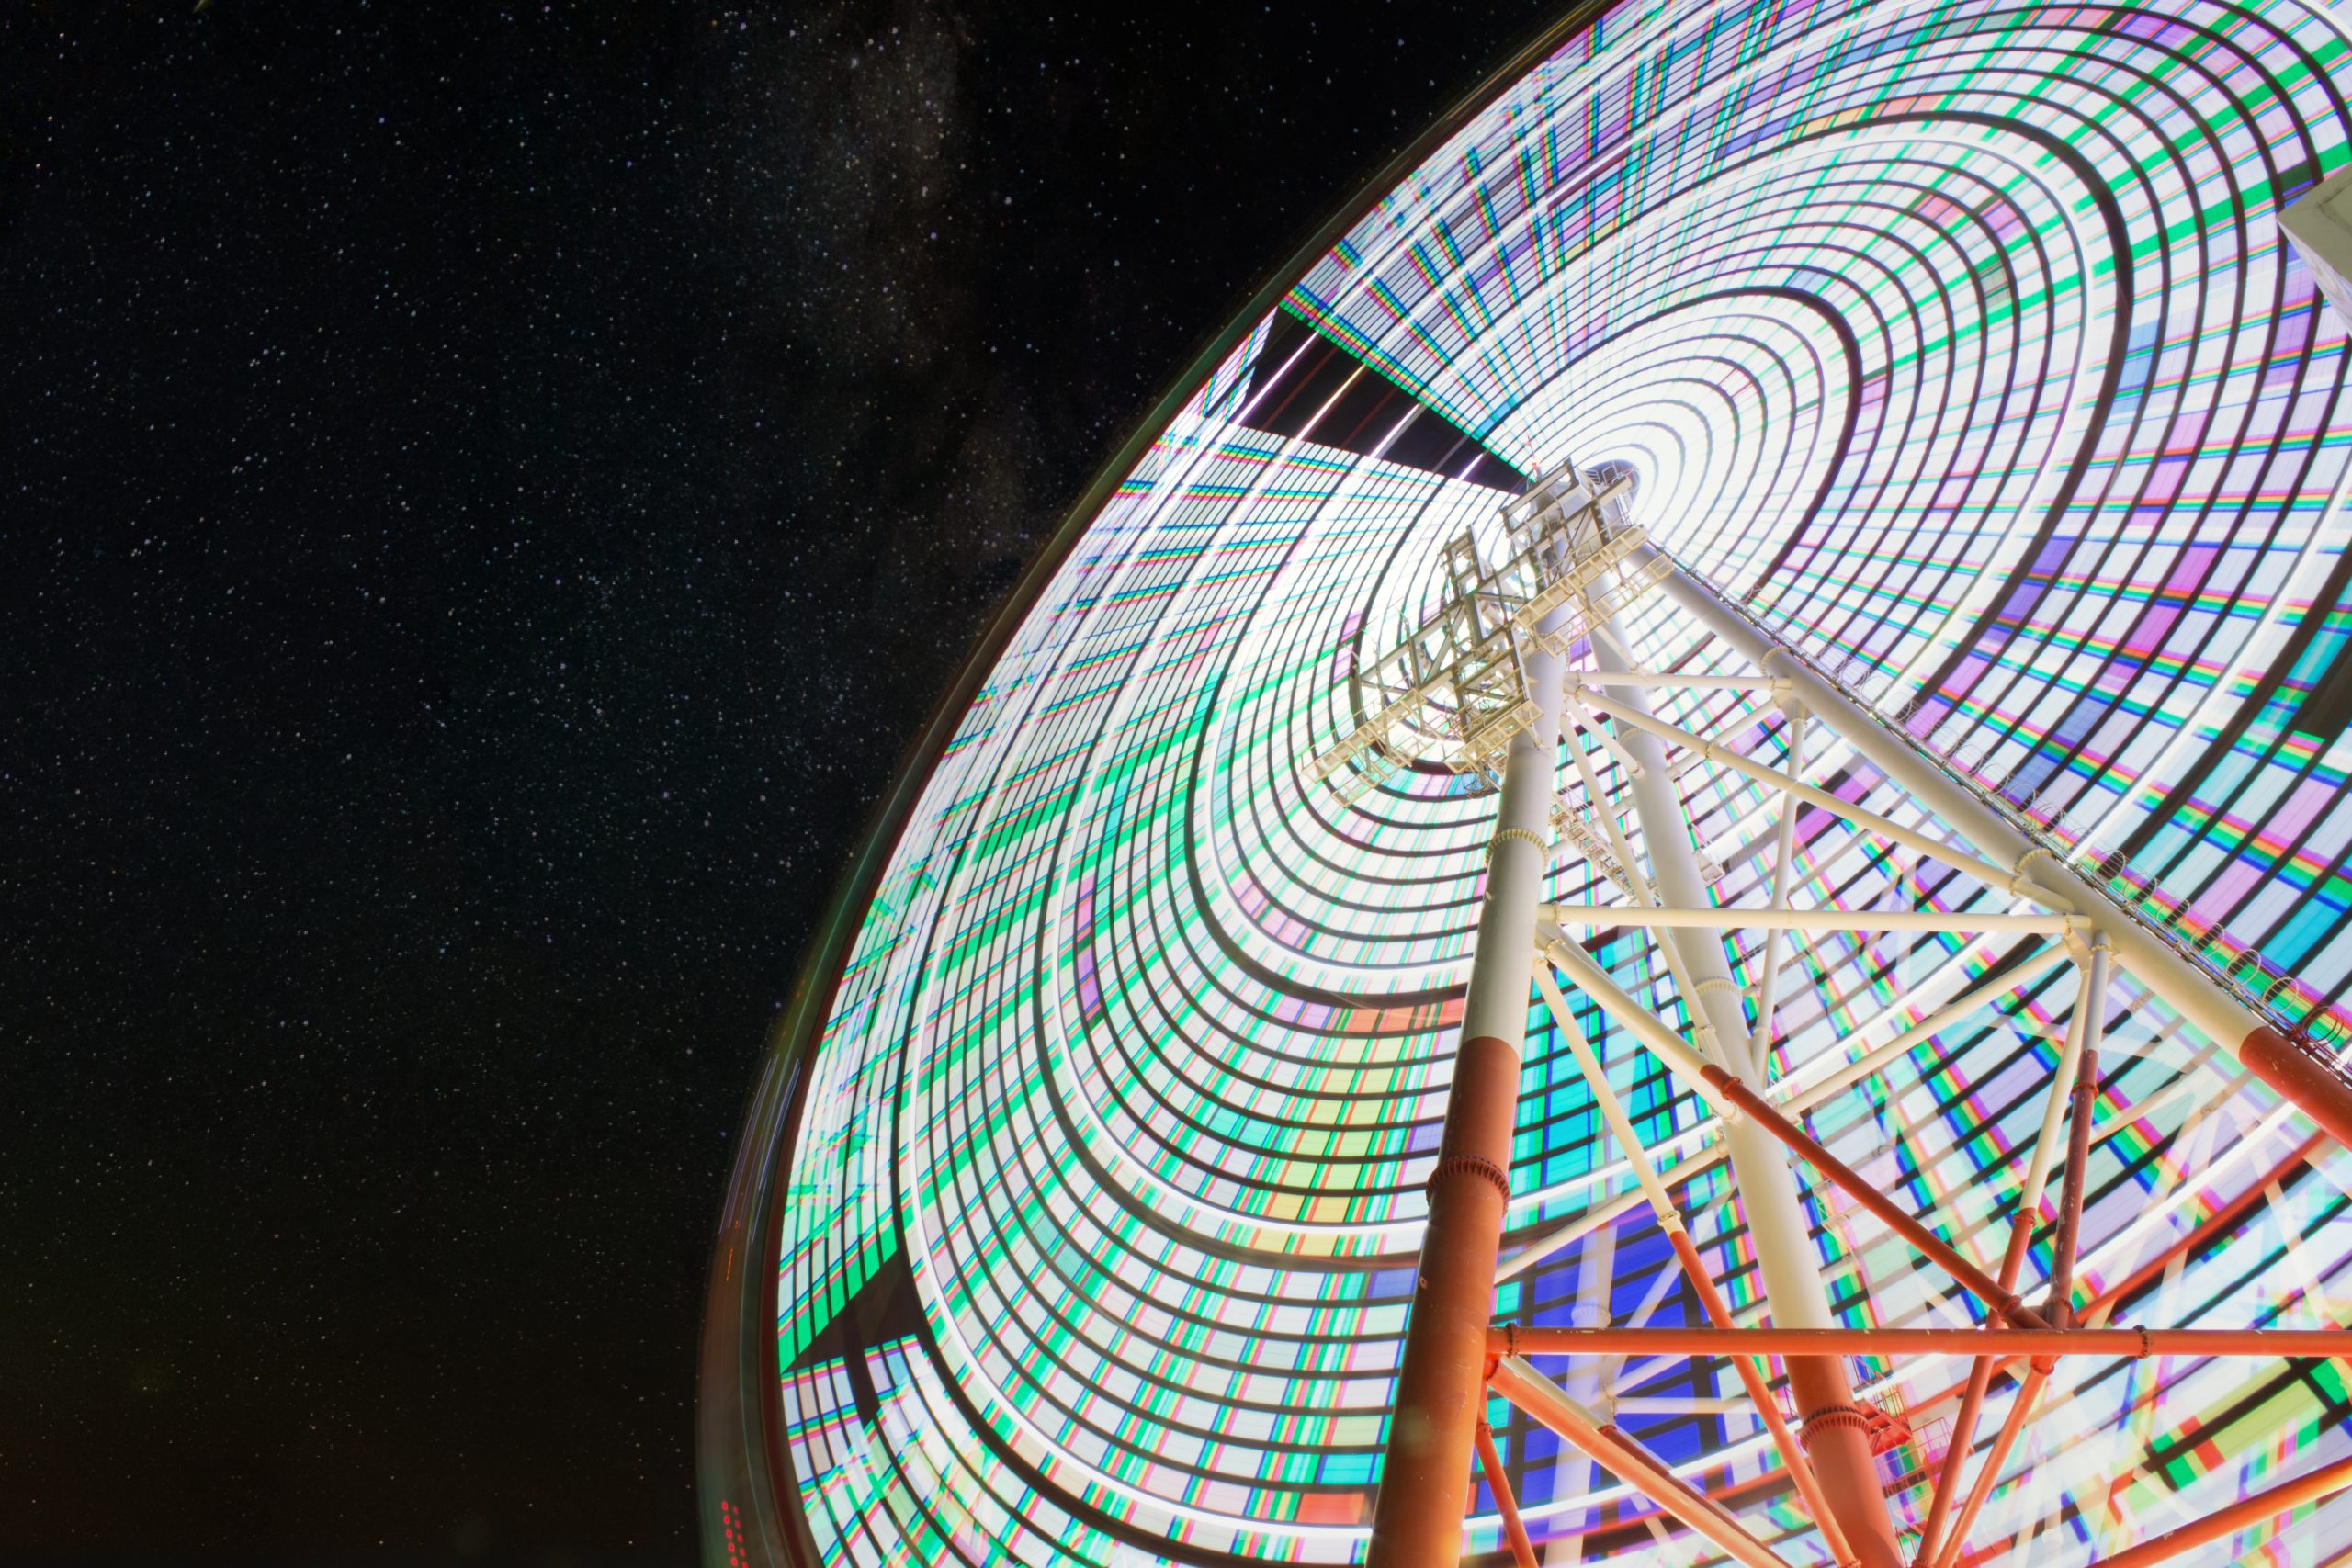 A giant ferris wheel in Japan